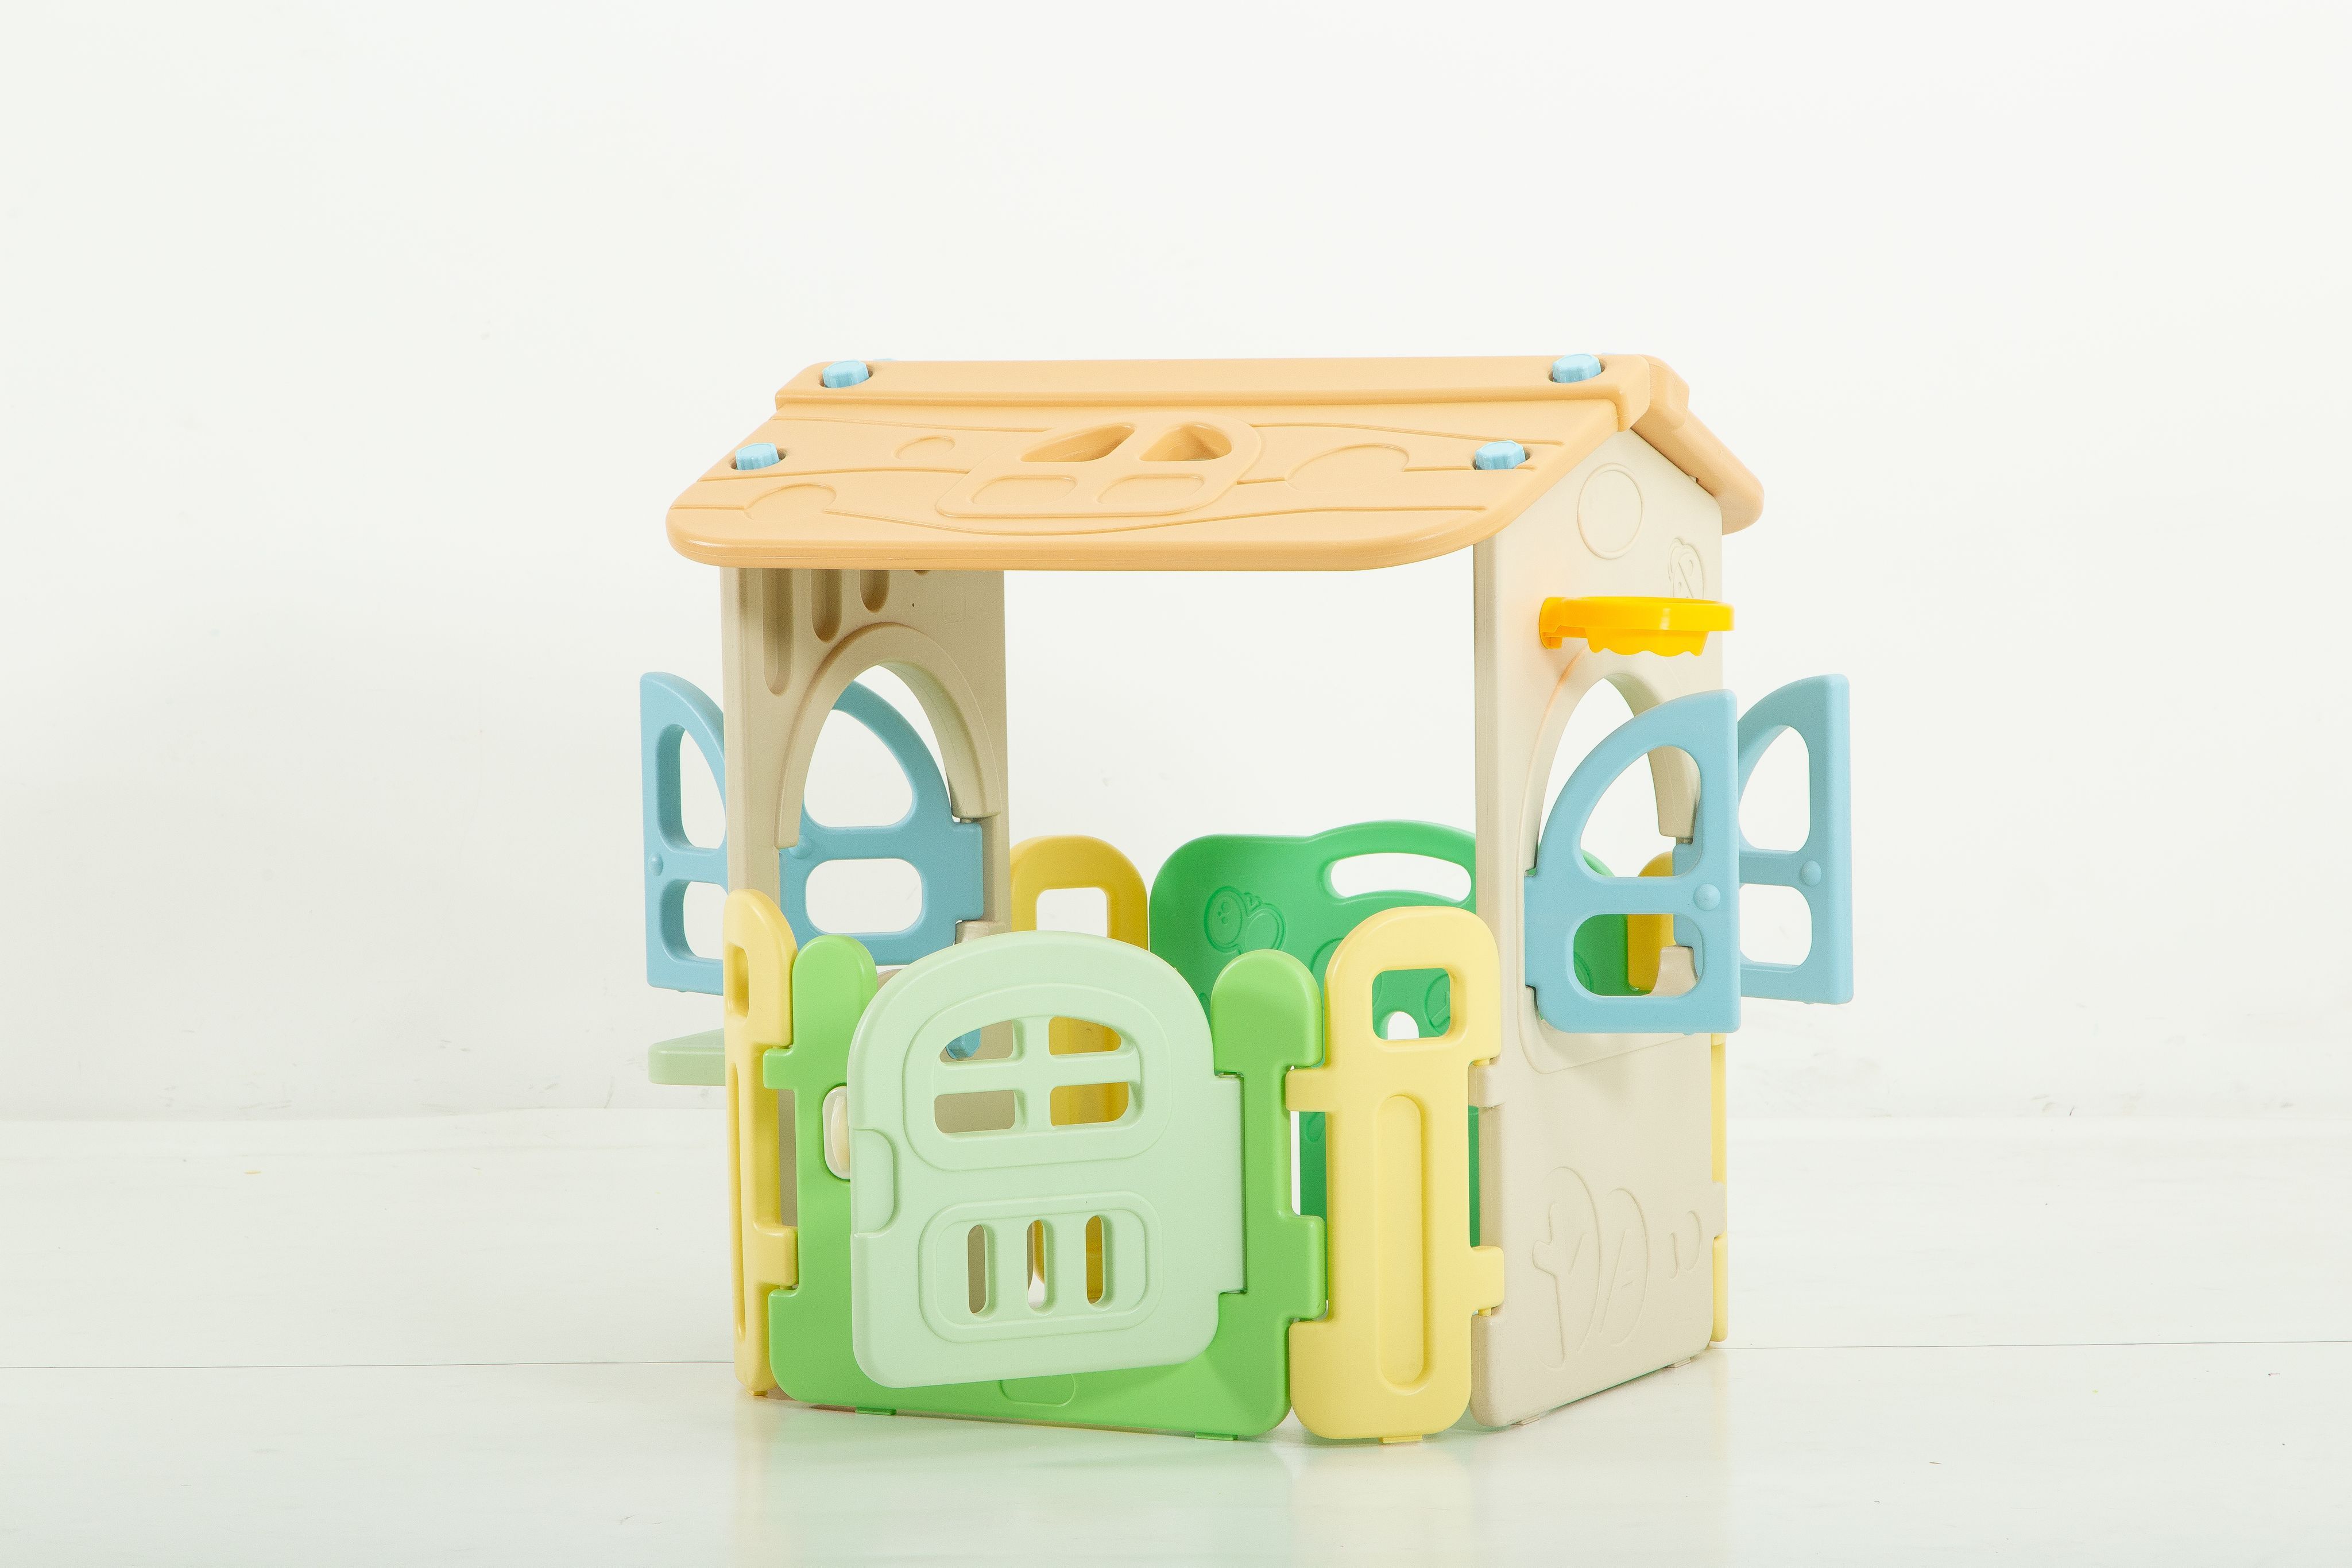 Манеж домик игровой детский UNIX Kids Village 2 в 1 складной, пластиковый, для дома, улицы toy monarch игровой домик с забором и горкой